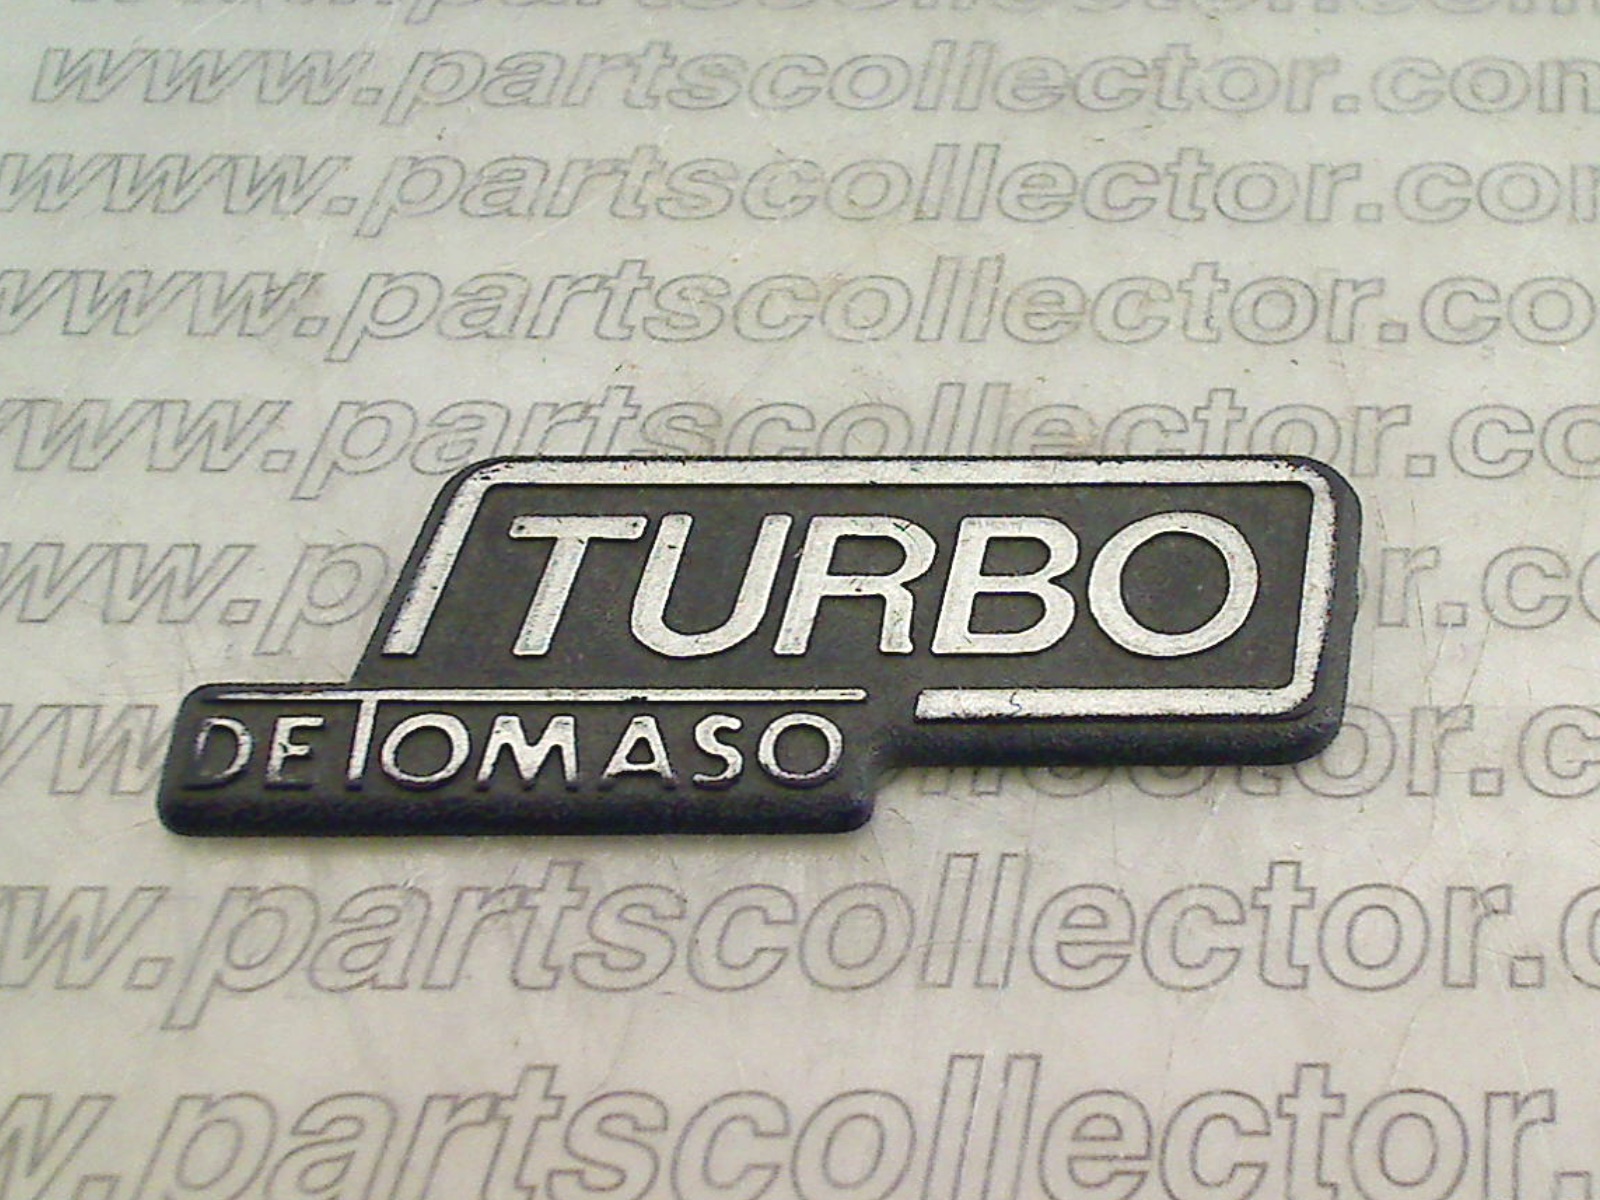 TURBO DE TOMASO BADGE